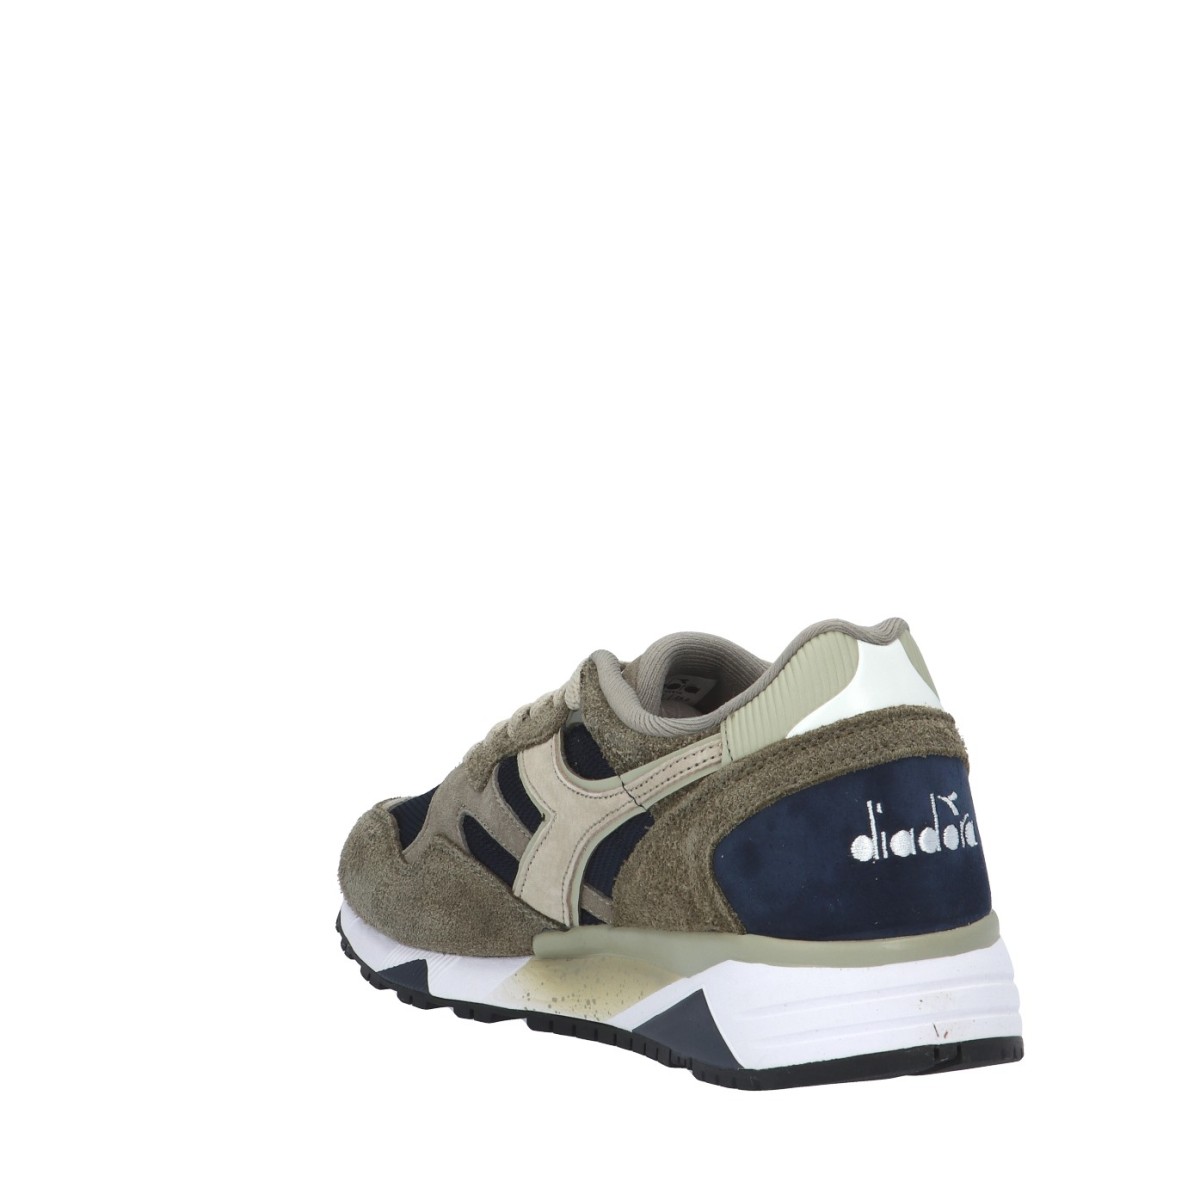 Diadora Sneaker Faggio/verde Gomma 501.179719